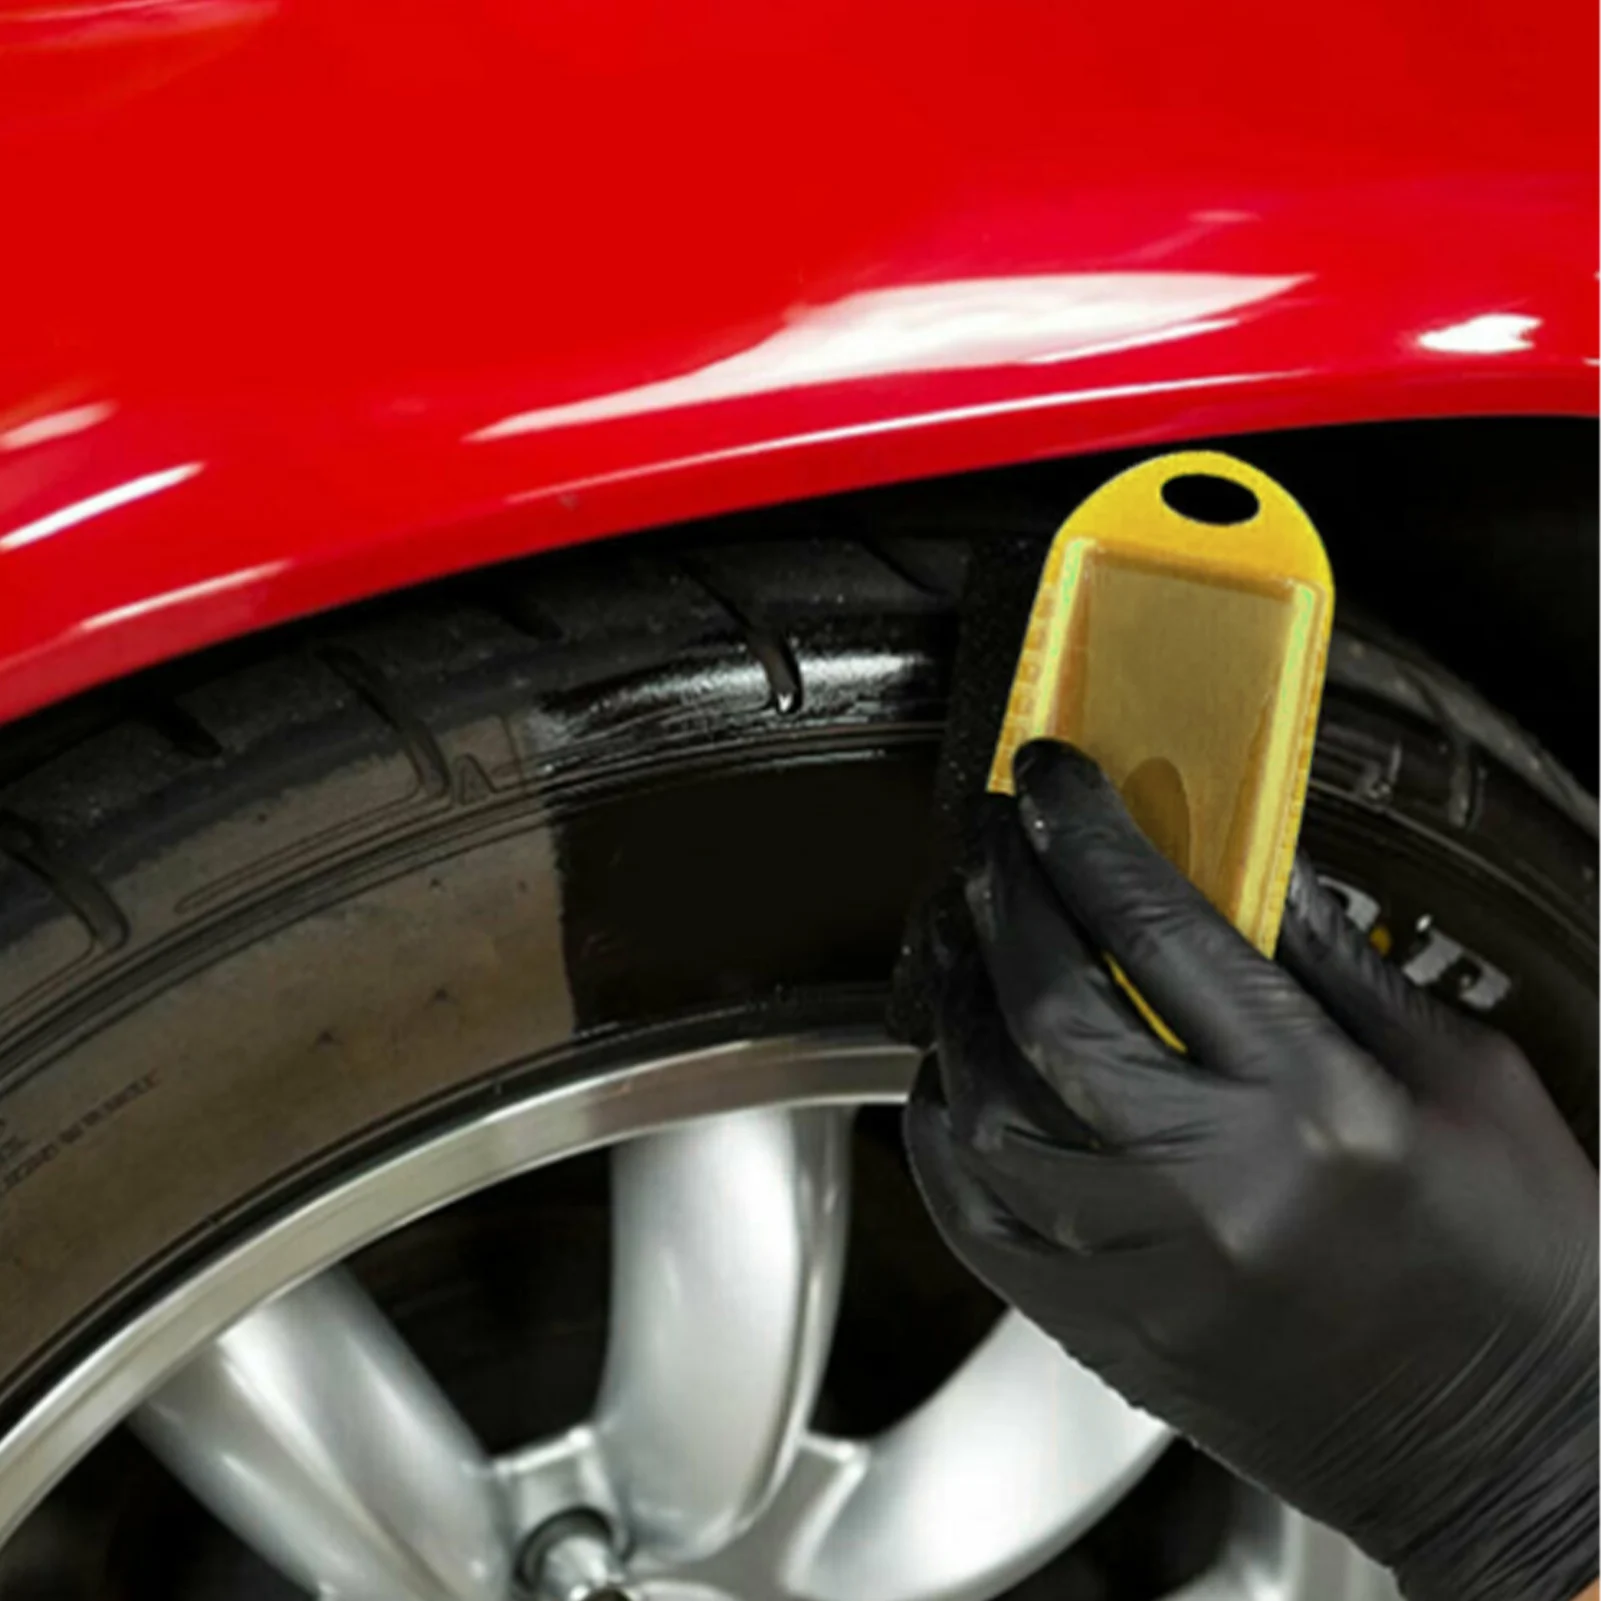 Губка для полировки автомобильных колес, щетка для вощения с покрытием ABS, мойка, чистка, Аппликатор для контурной обработки шин, накладки для аппликатора, аксессуары для деталей